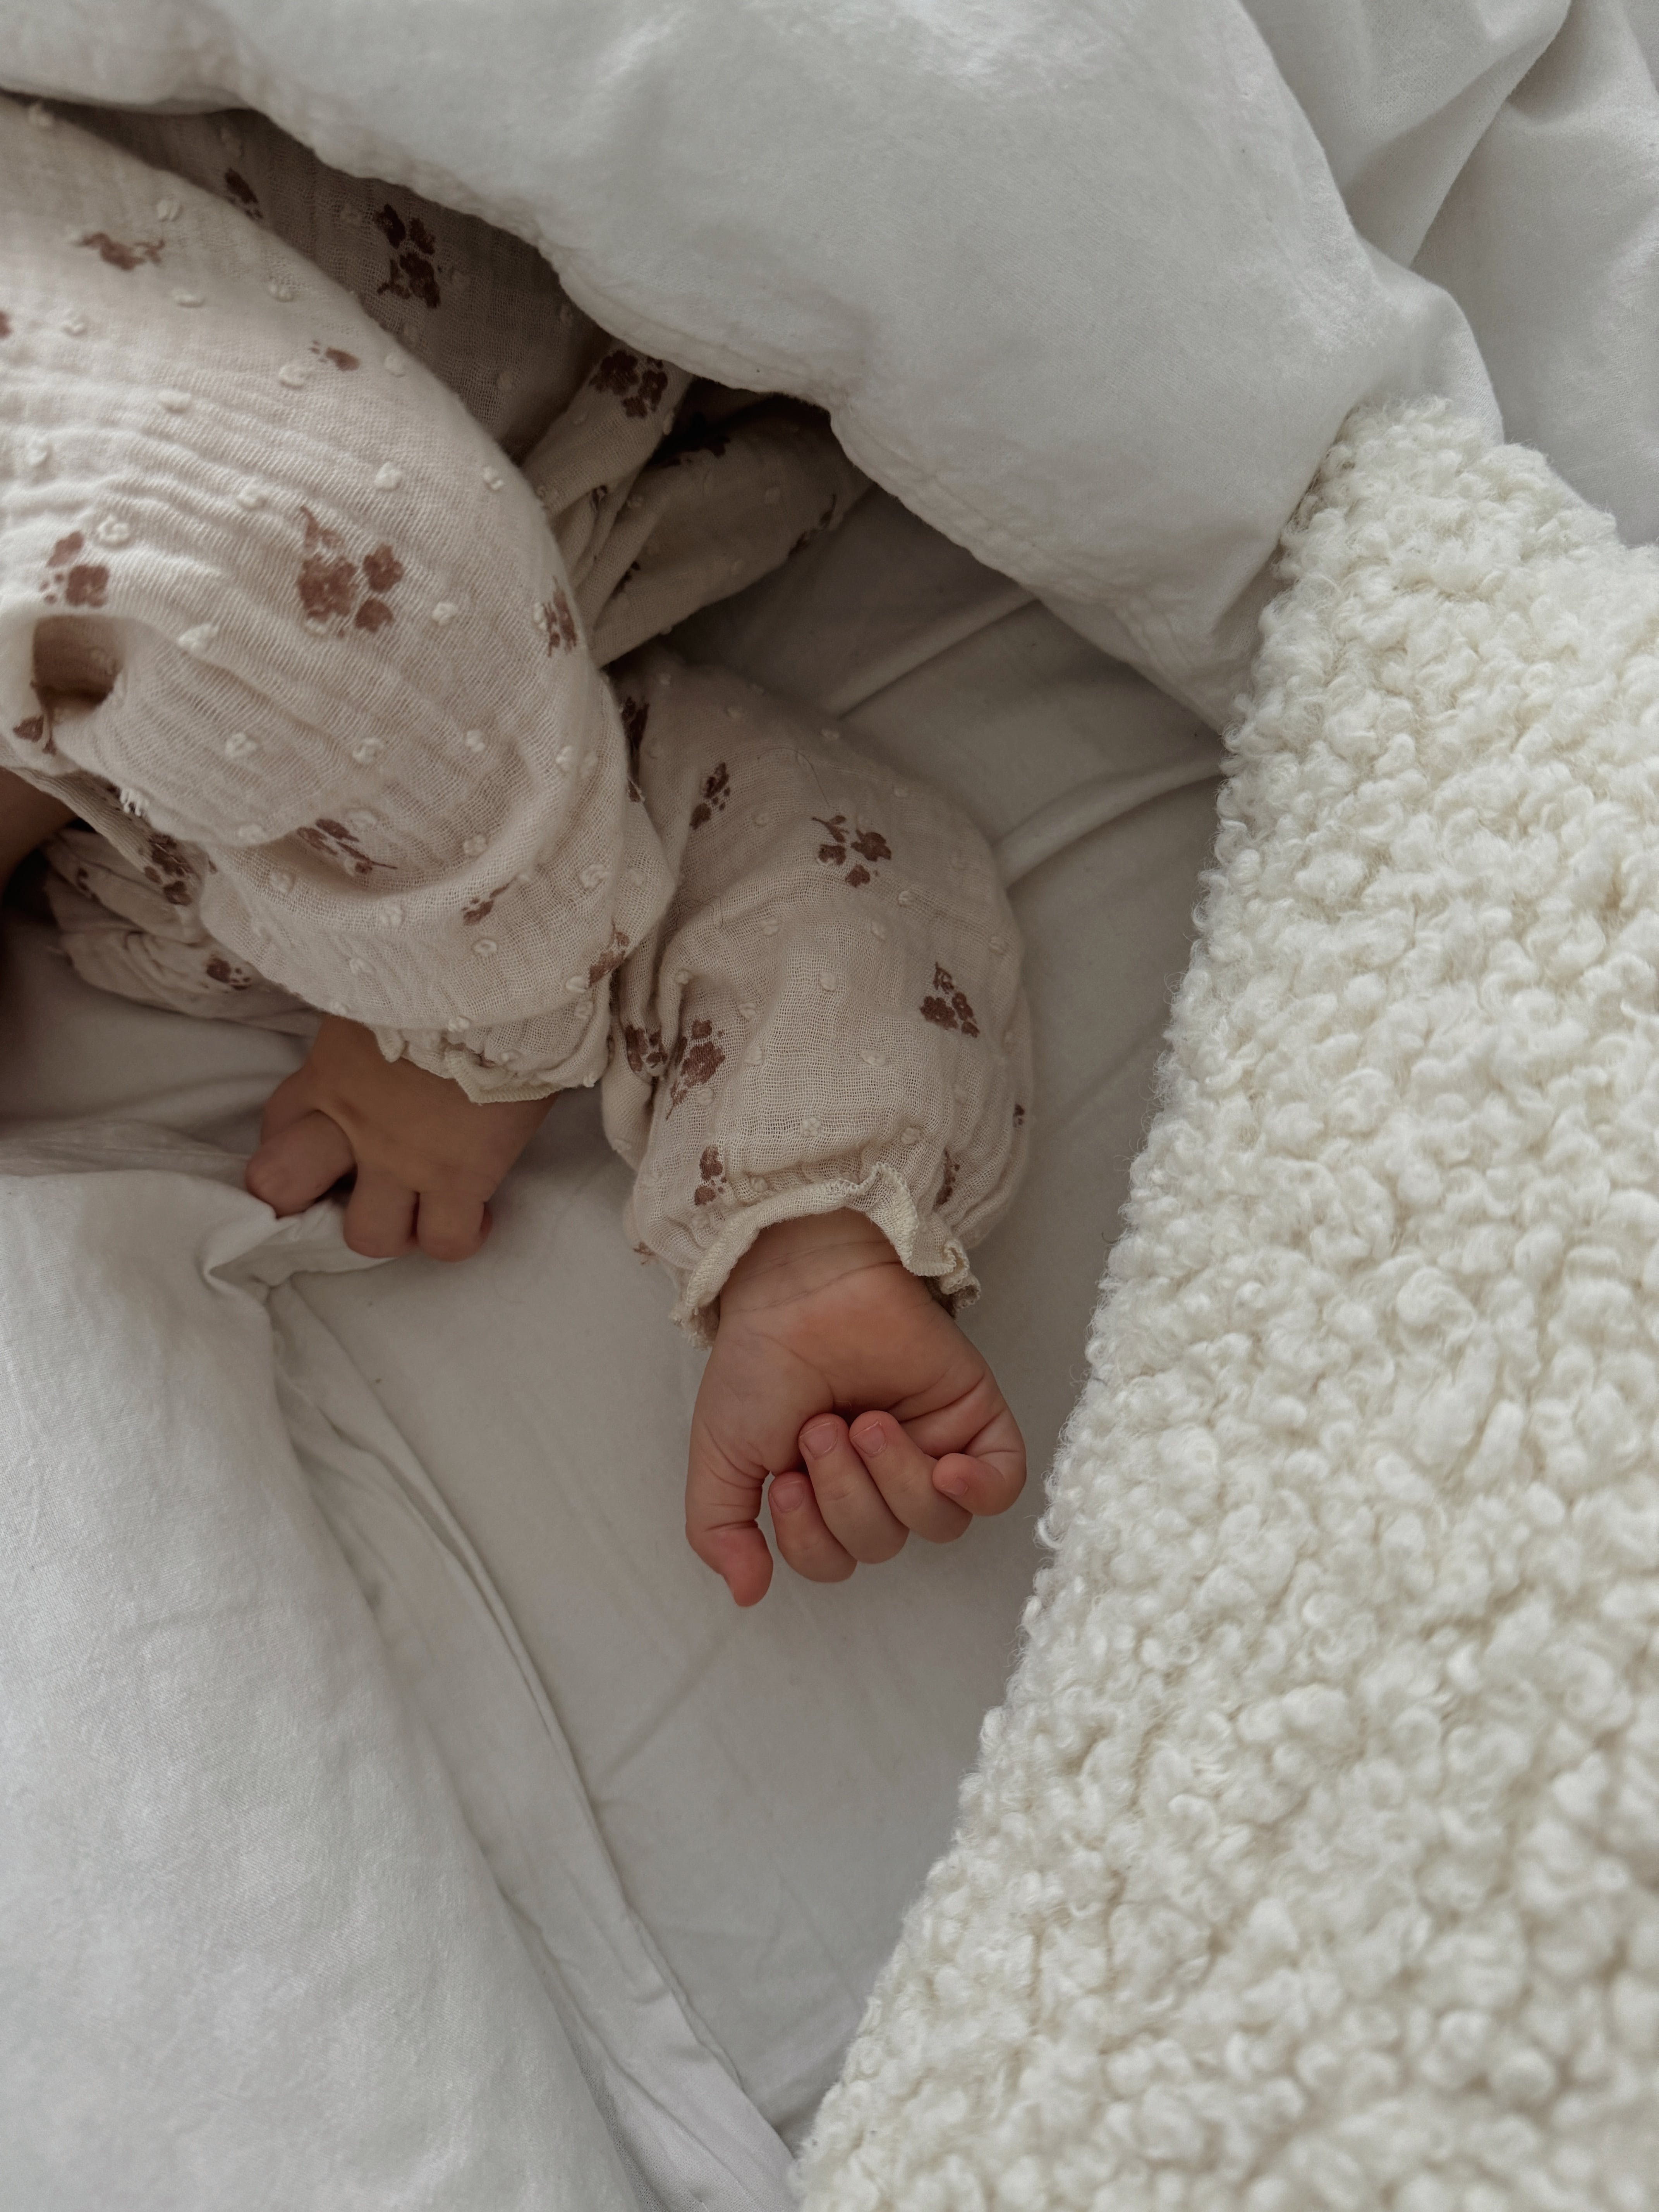 Les mains d'un bébé vues alors qu'il dort dans un lit d'enfant | Source : Pexels